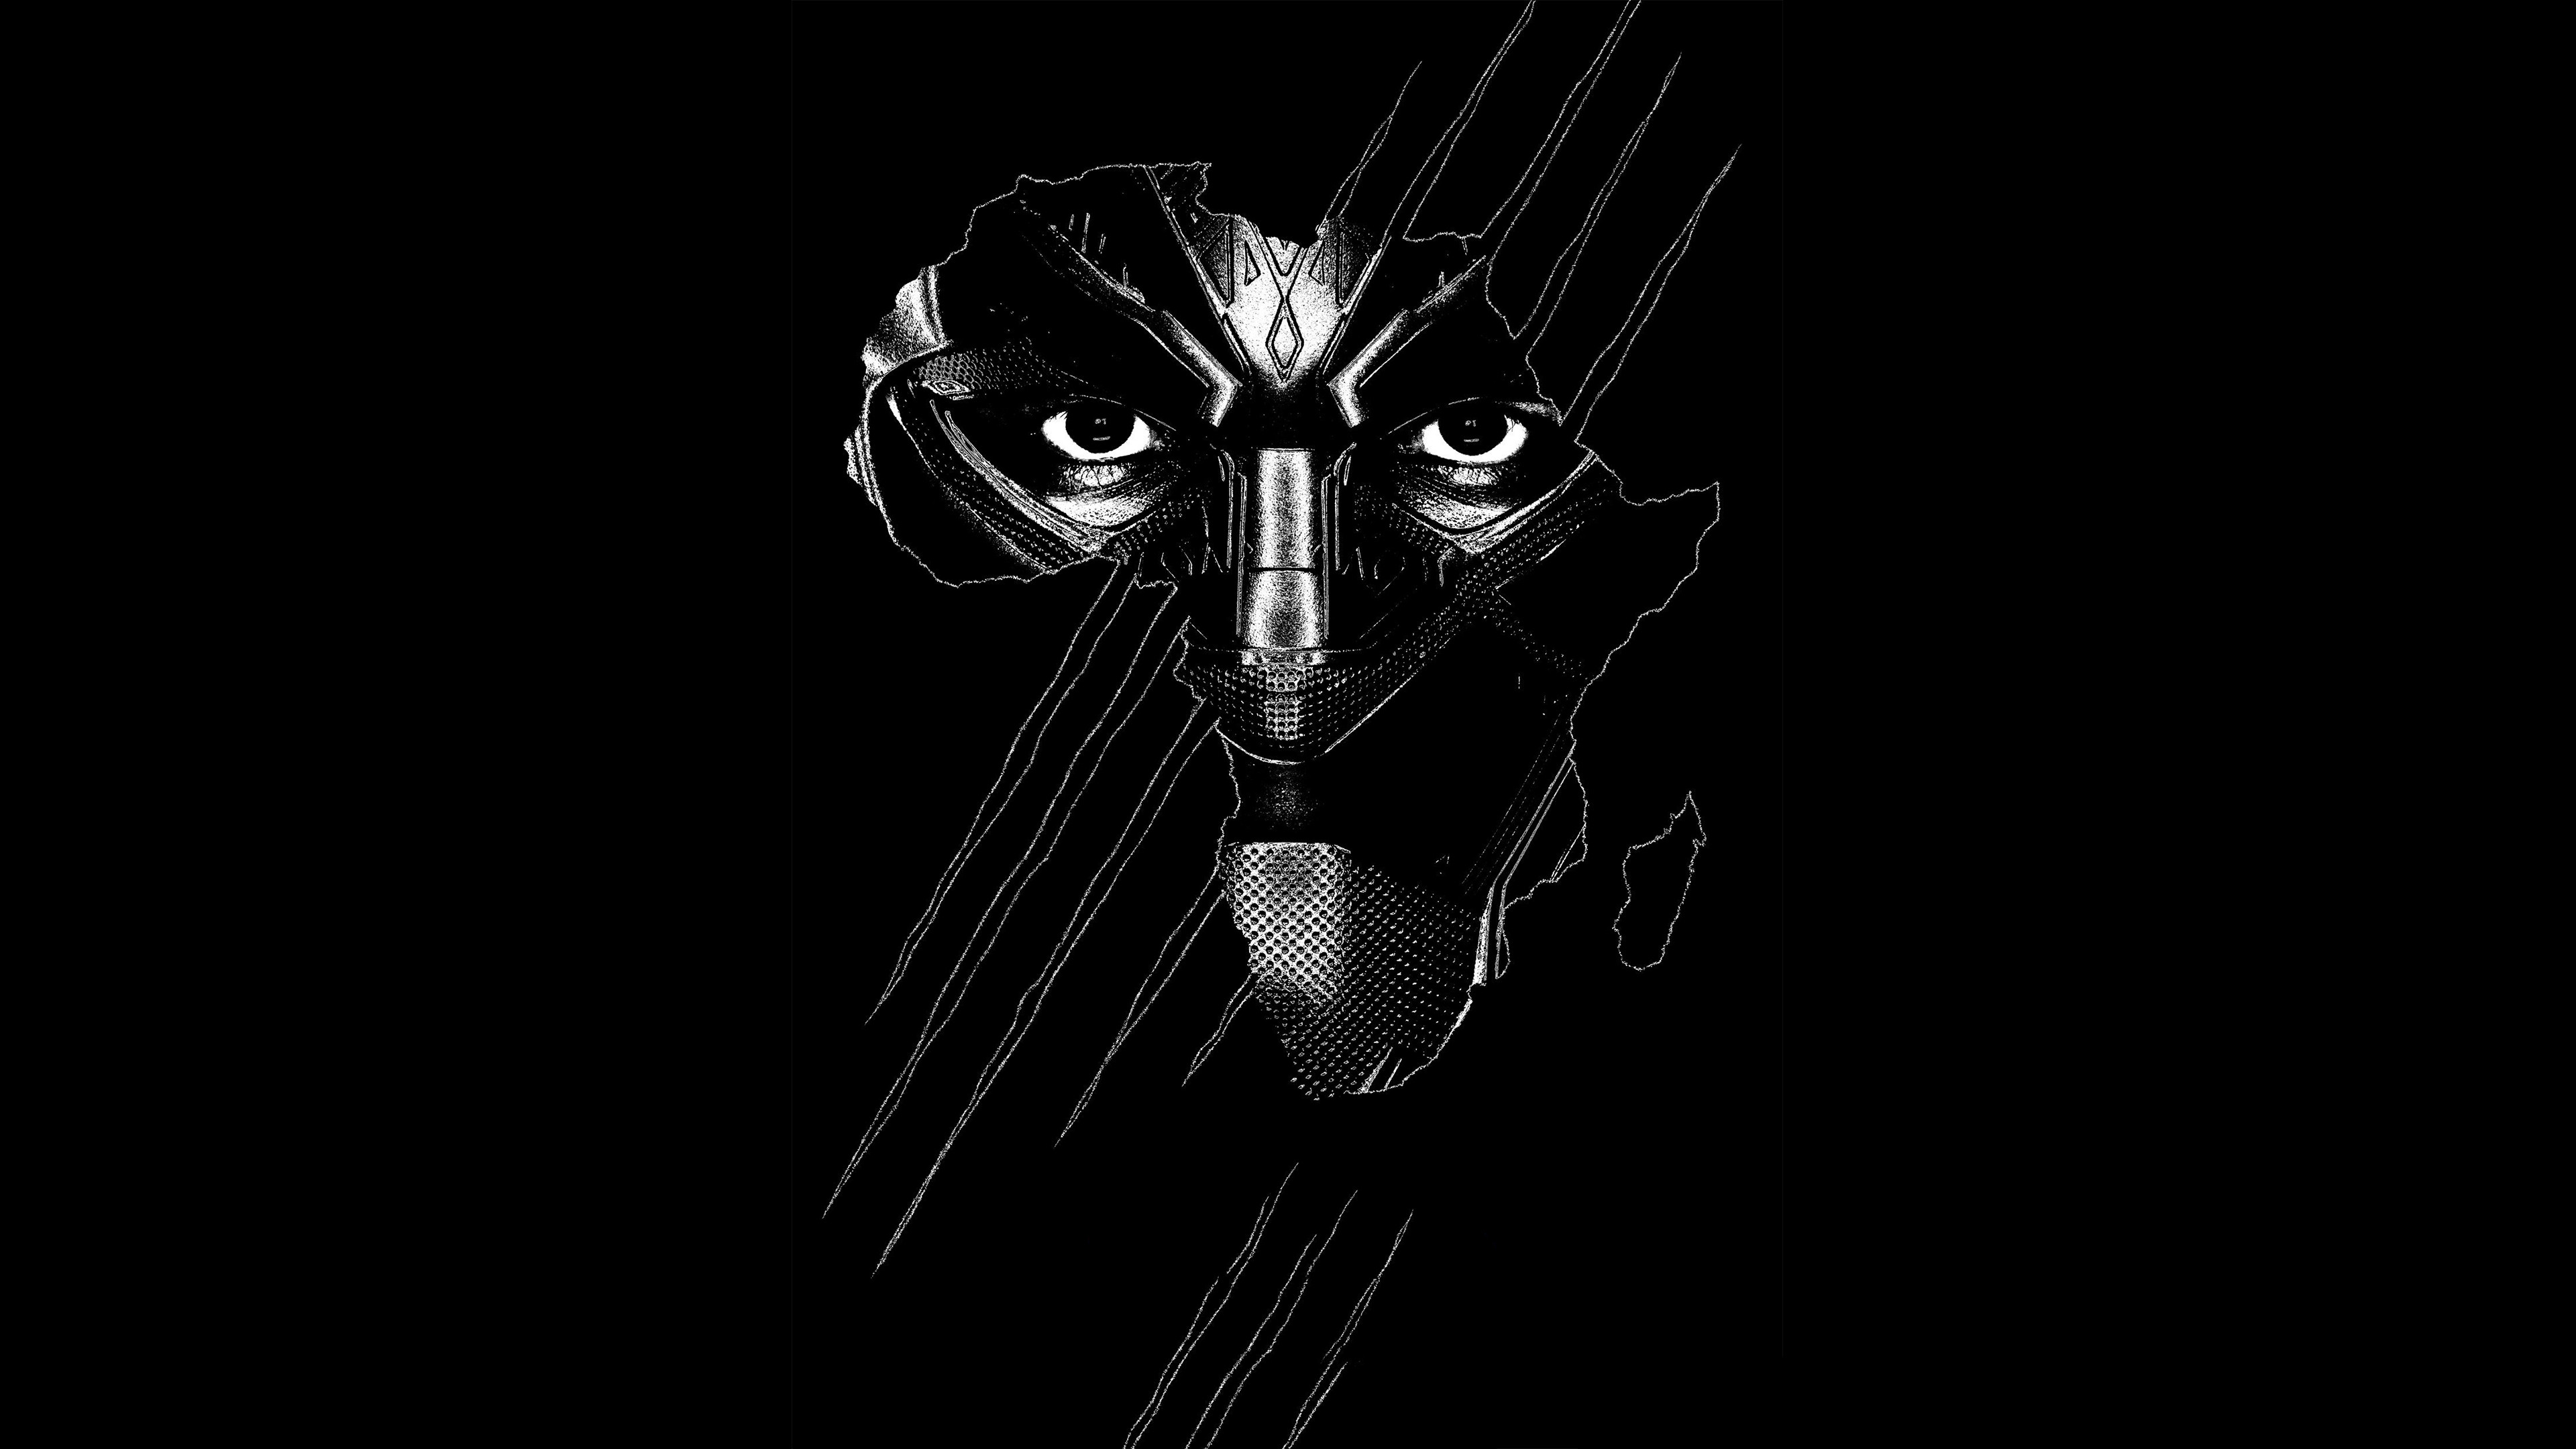 Hình nền Black Panther đen, poster, 4k, Movies #17534 - Hãy chuẩn bị để bị cuốn hút vào không gian đầy màu sắc của bộ phim Black Panther với hình nền đen độc đáo này. Với kích thước 4K và đường viền poster, bức tranh sẽ giúp bạn có những trải nghiệm đầy thú vị về phim ảnh.